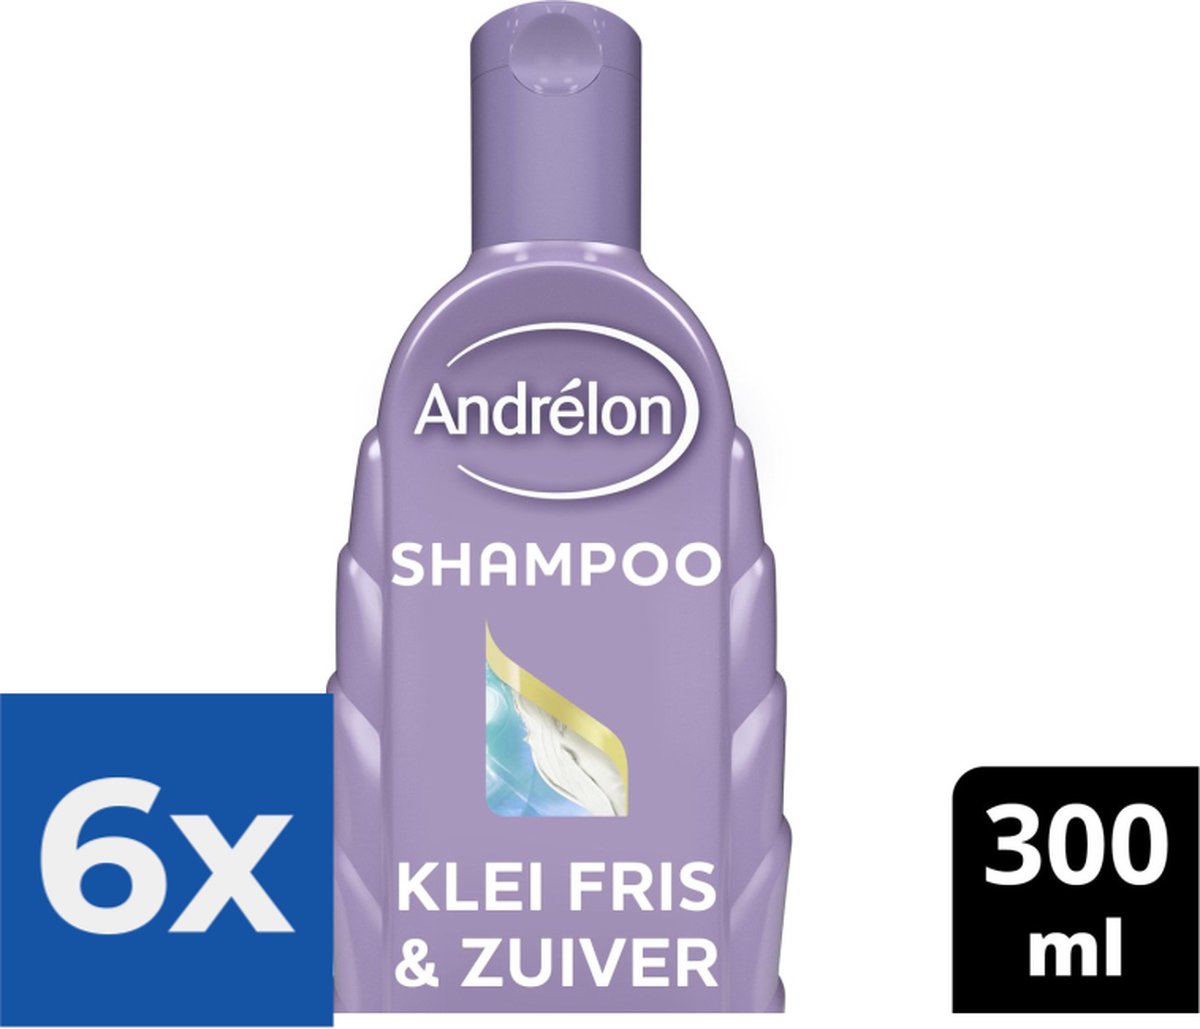 Andrélon Klei Fris & Zuiver Shampoo 300 ml Voordeelverpakking 6 stuks